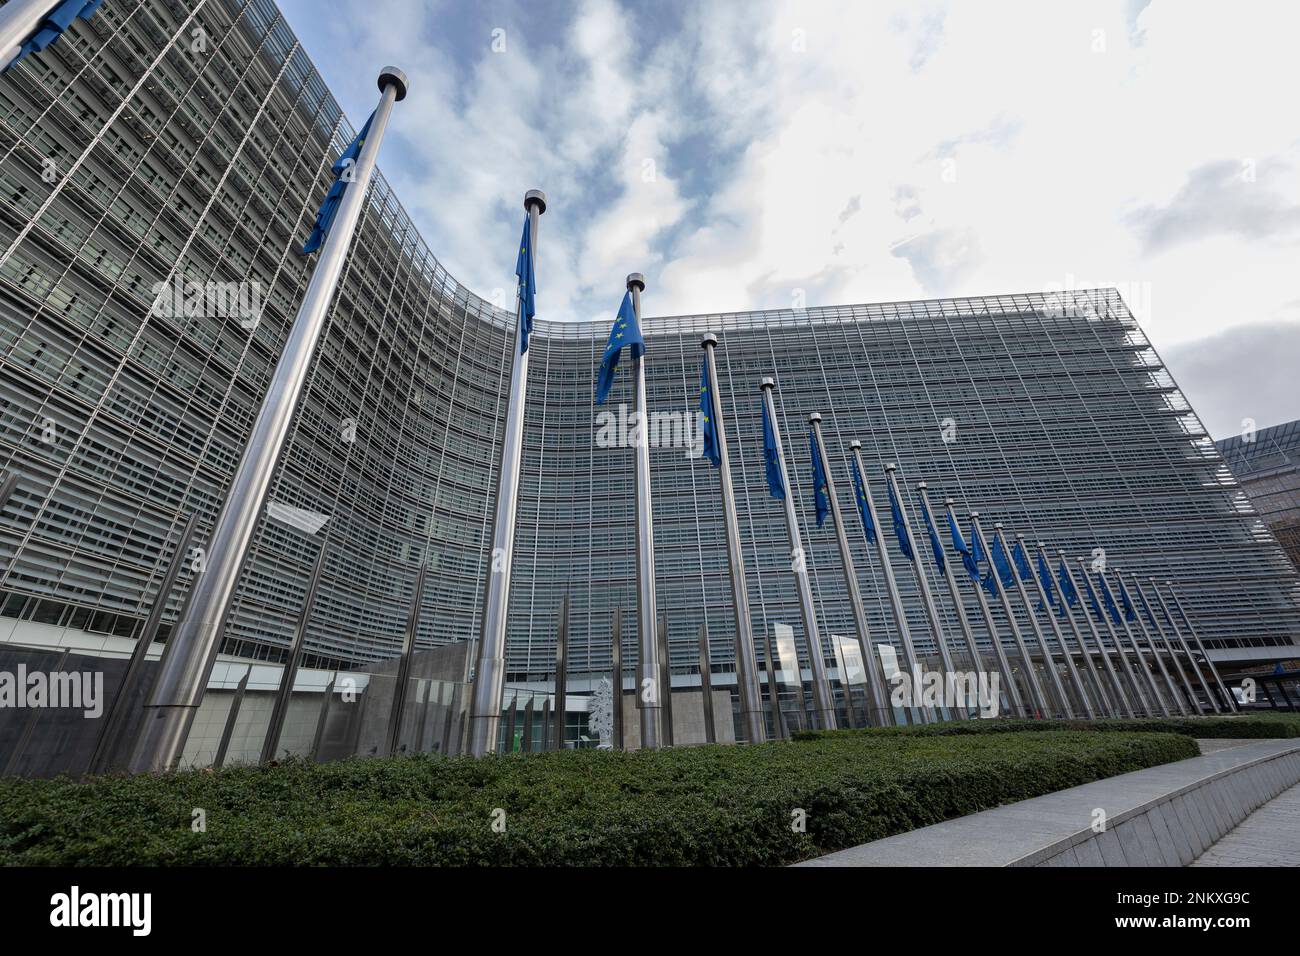 BRUXELLES, Belgique - 23 février 2023: Bâtiment Berlaymont, siège de la Commission européenne, avec des drapeaux soufflant dans le vent devant lui Banque D'Images